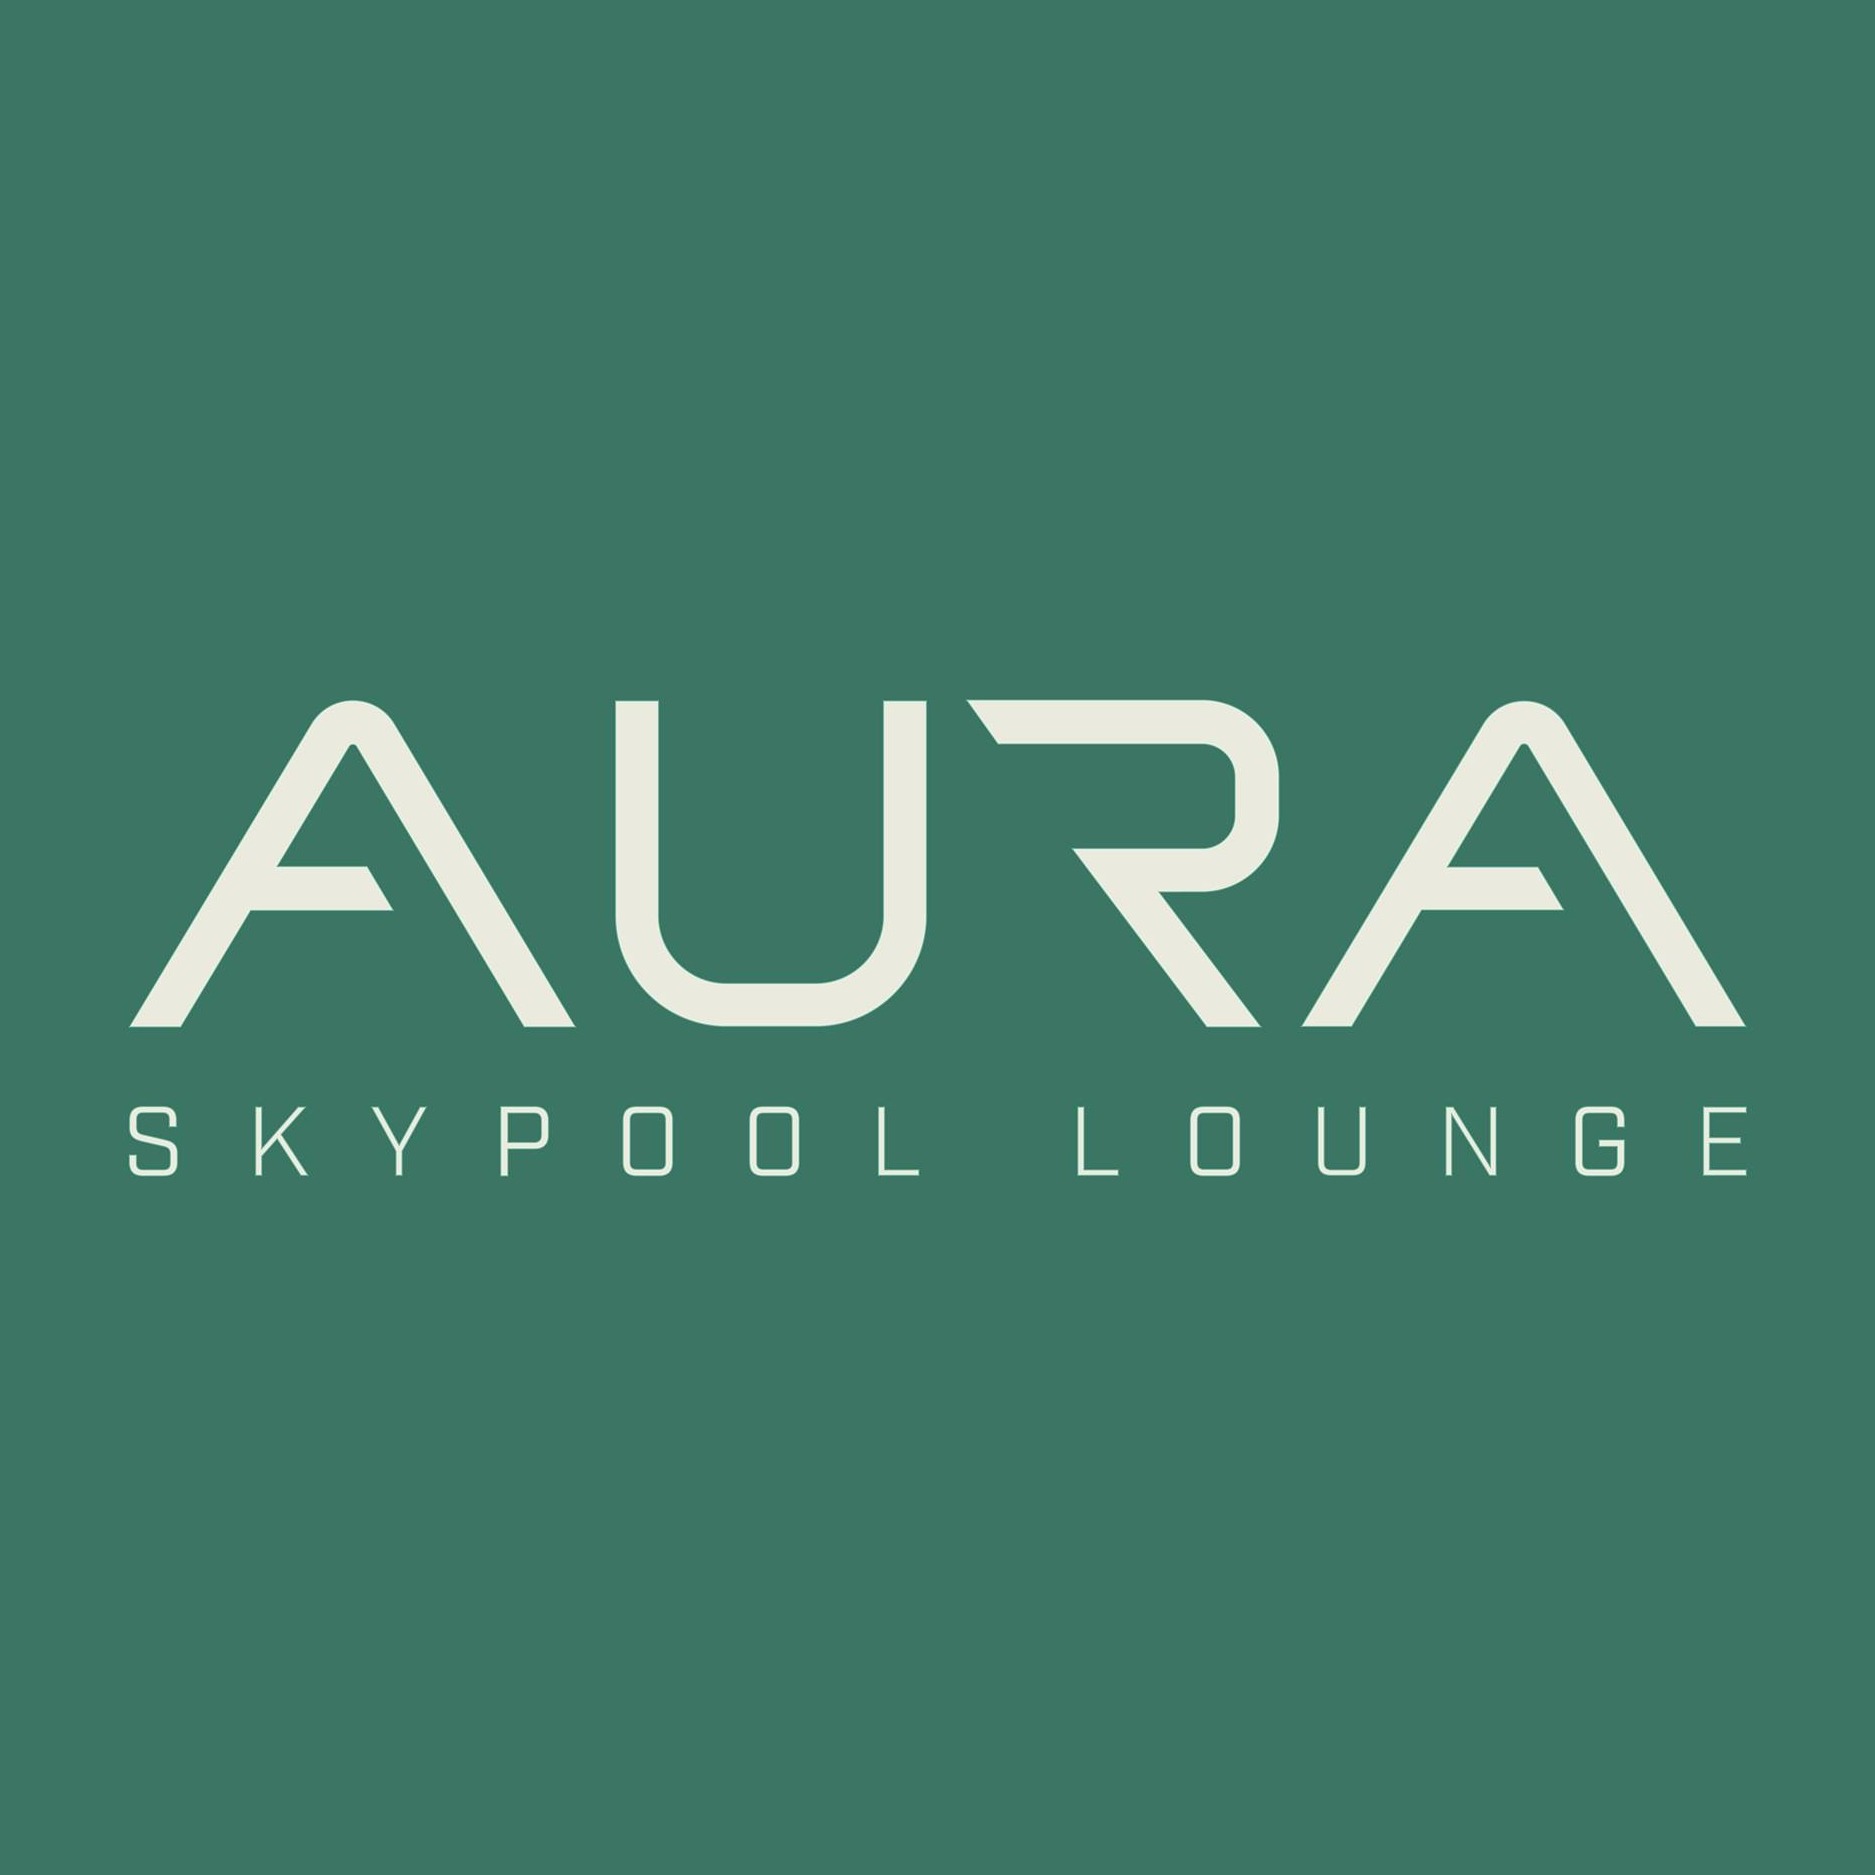 AURA Skypool - Coming Soon in UAE